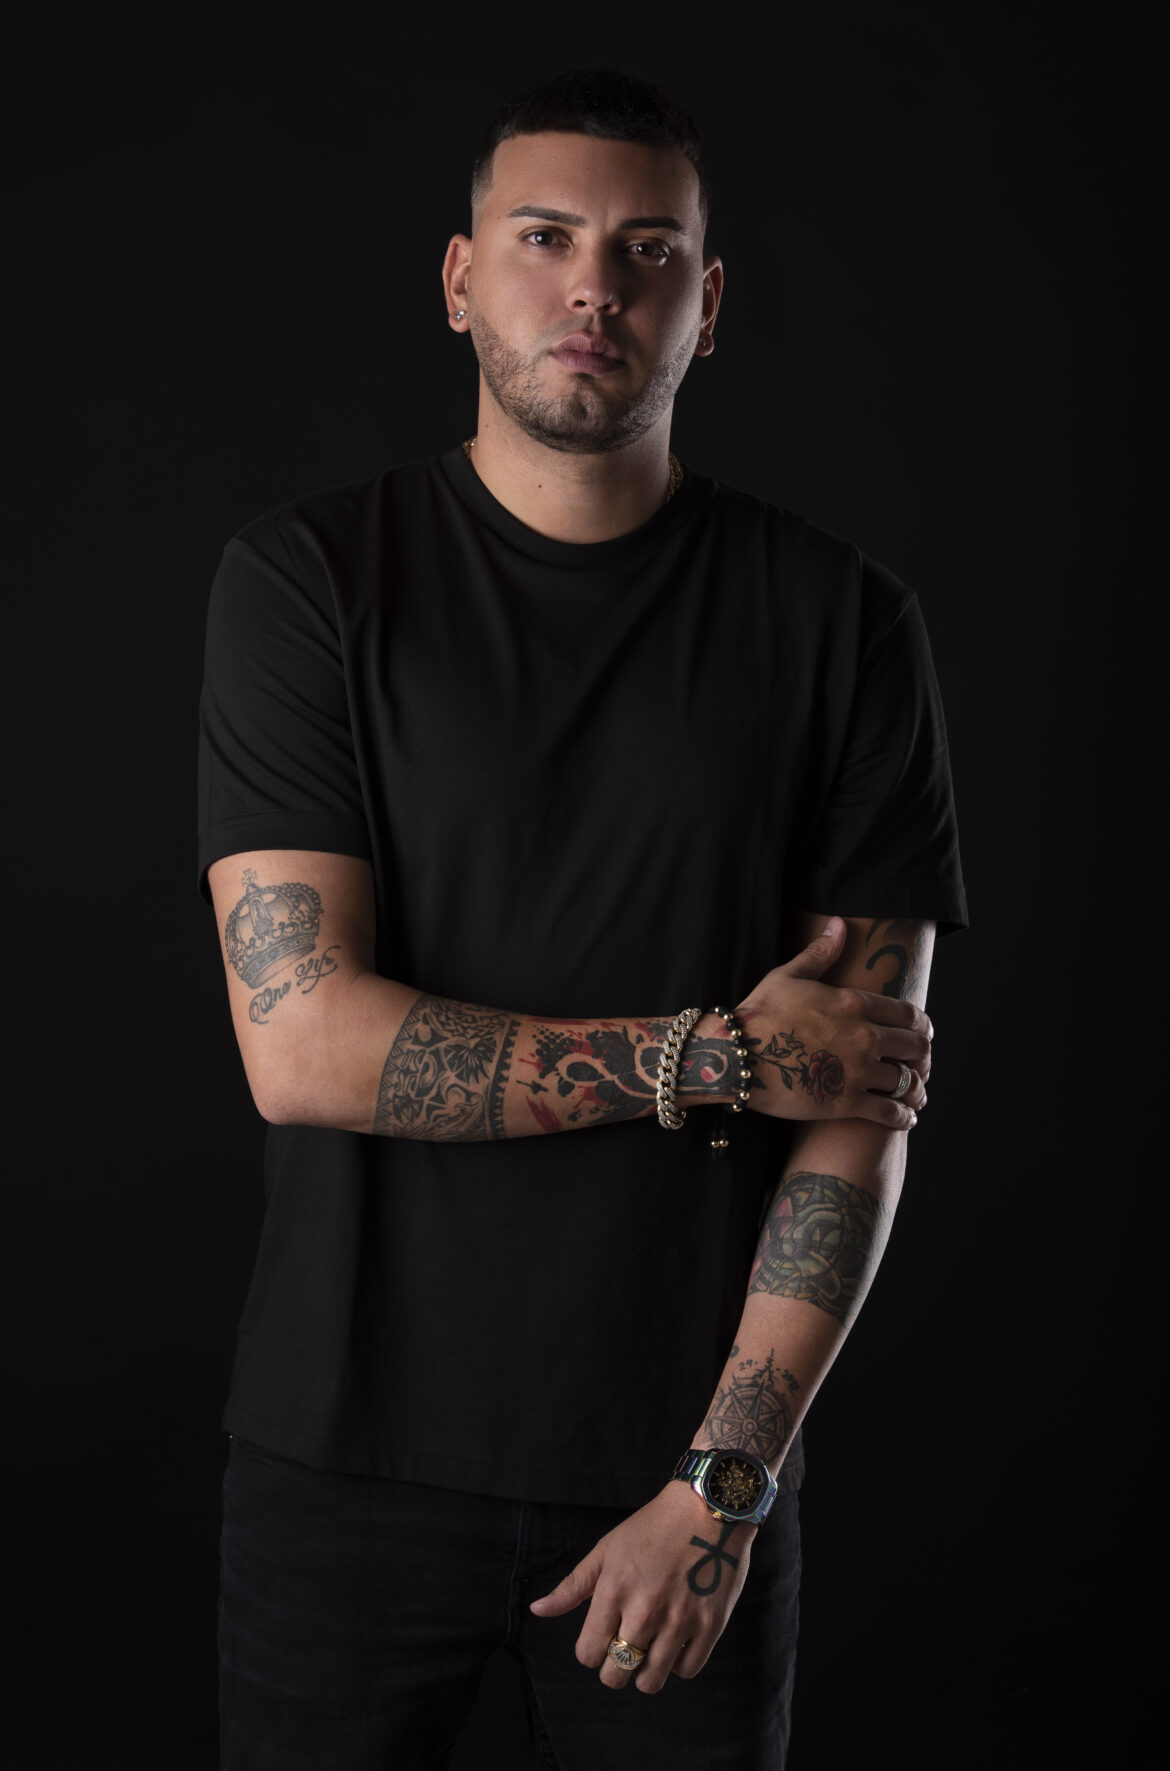 El DJ Gustavo Domínguez marca tendencia en la música electrónica